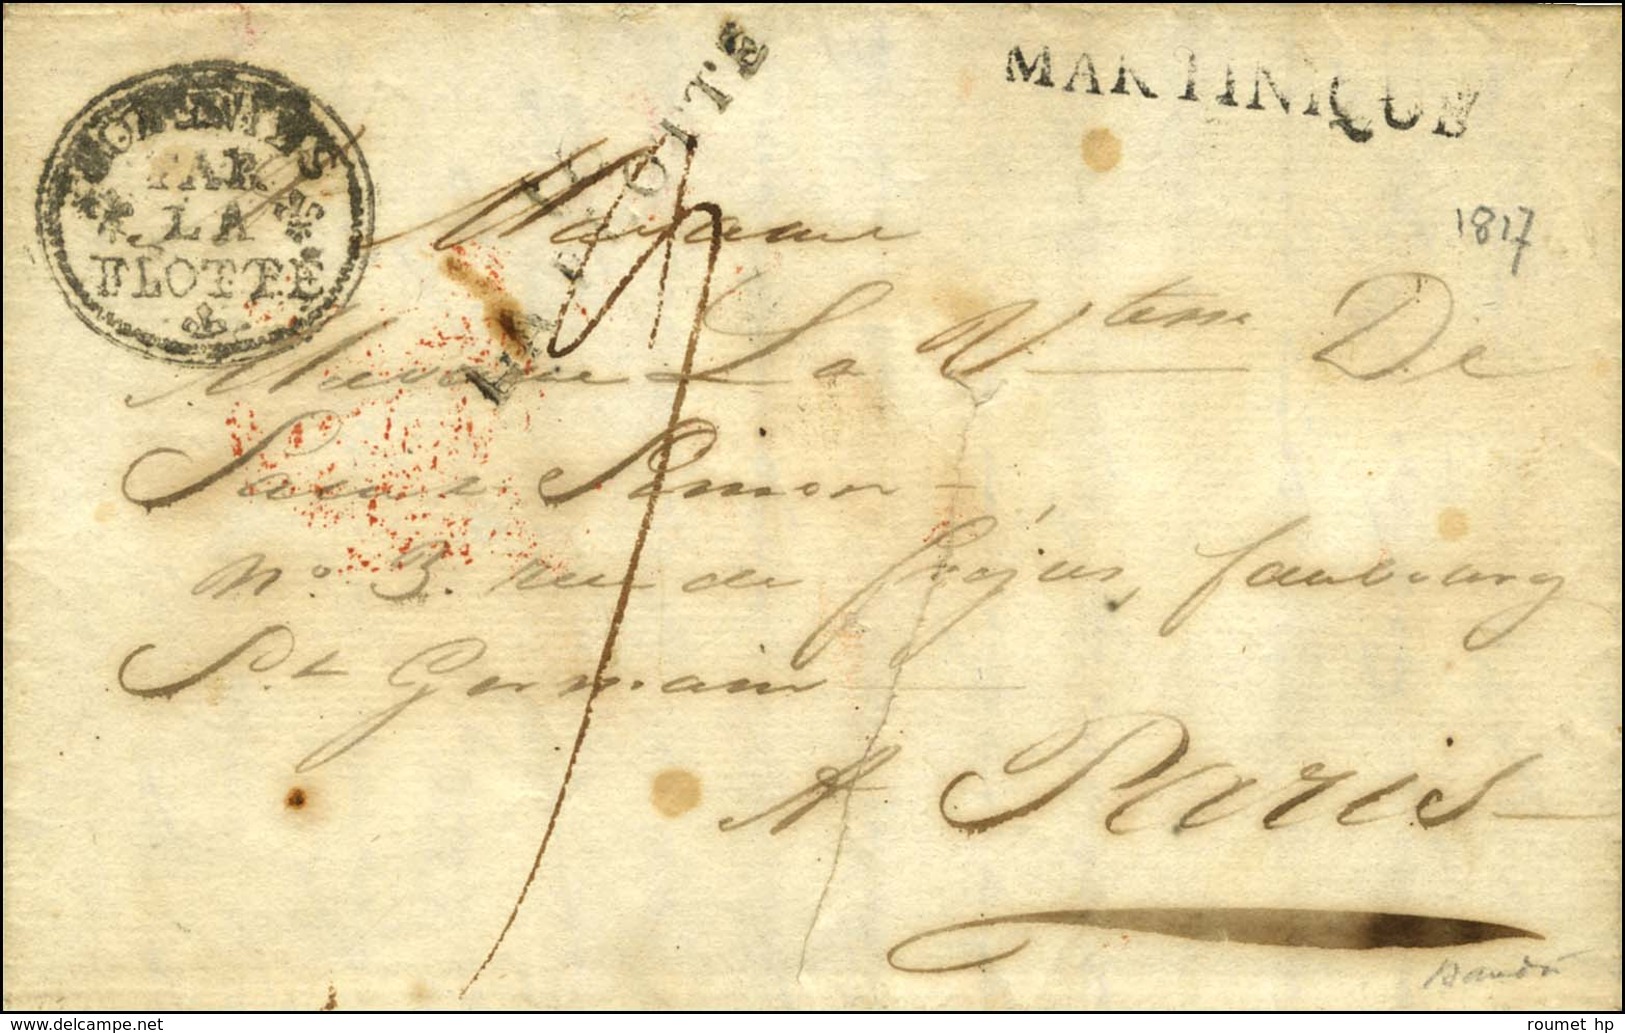 Lettre Avec Texte Daté Du 15 Novembre 1816 Pour Paris. Au Recto, Marque Postale D'entrée COLONIES / PAR / LA / FLOTTE (S - Poste Maritime